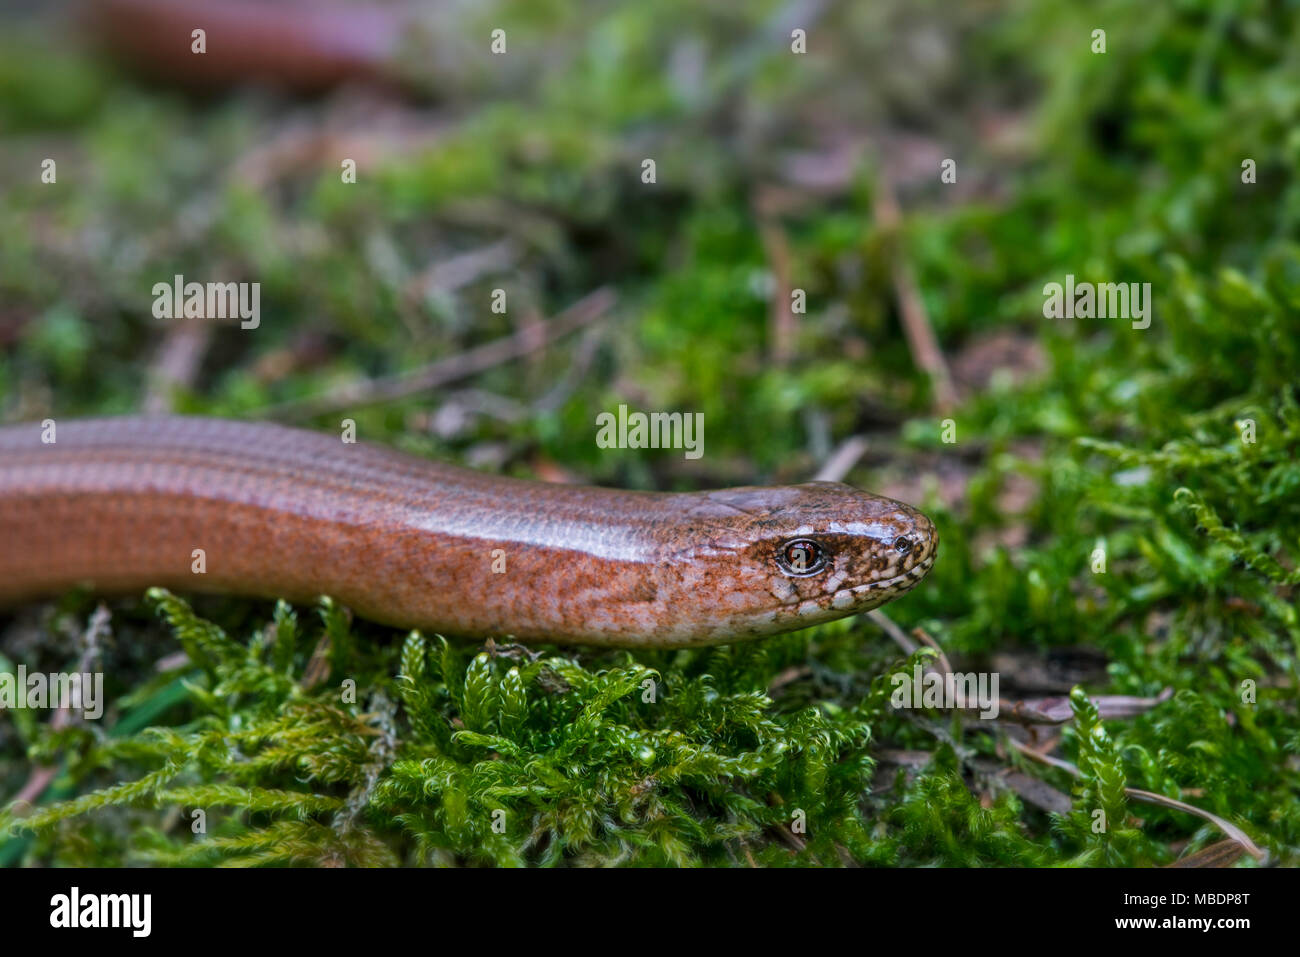 Männliche gemeinsame slowworm/blindworm (Anguis fragilis) Nahaufnahme des Kopfes auf Moos im Wald im Frühling Stockfoto